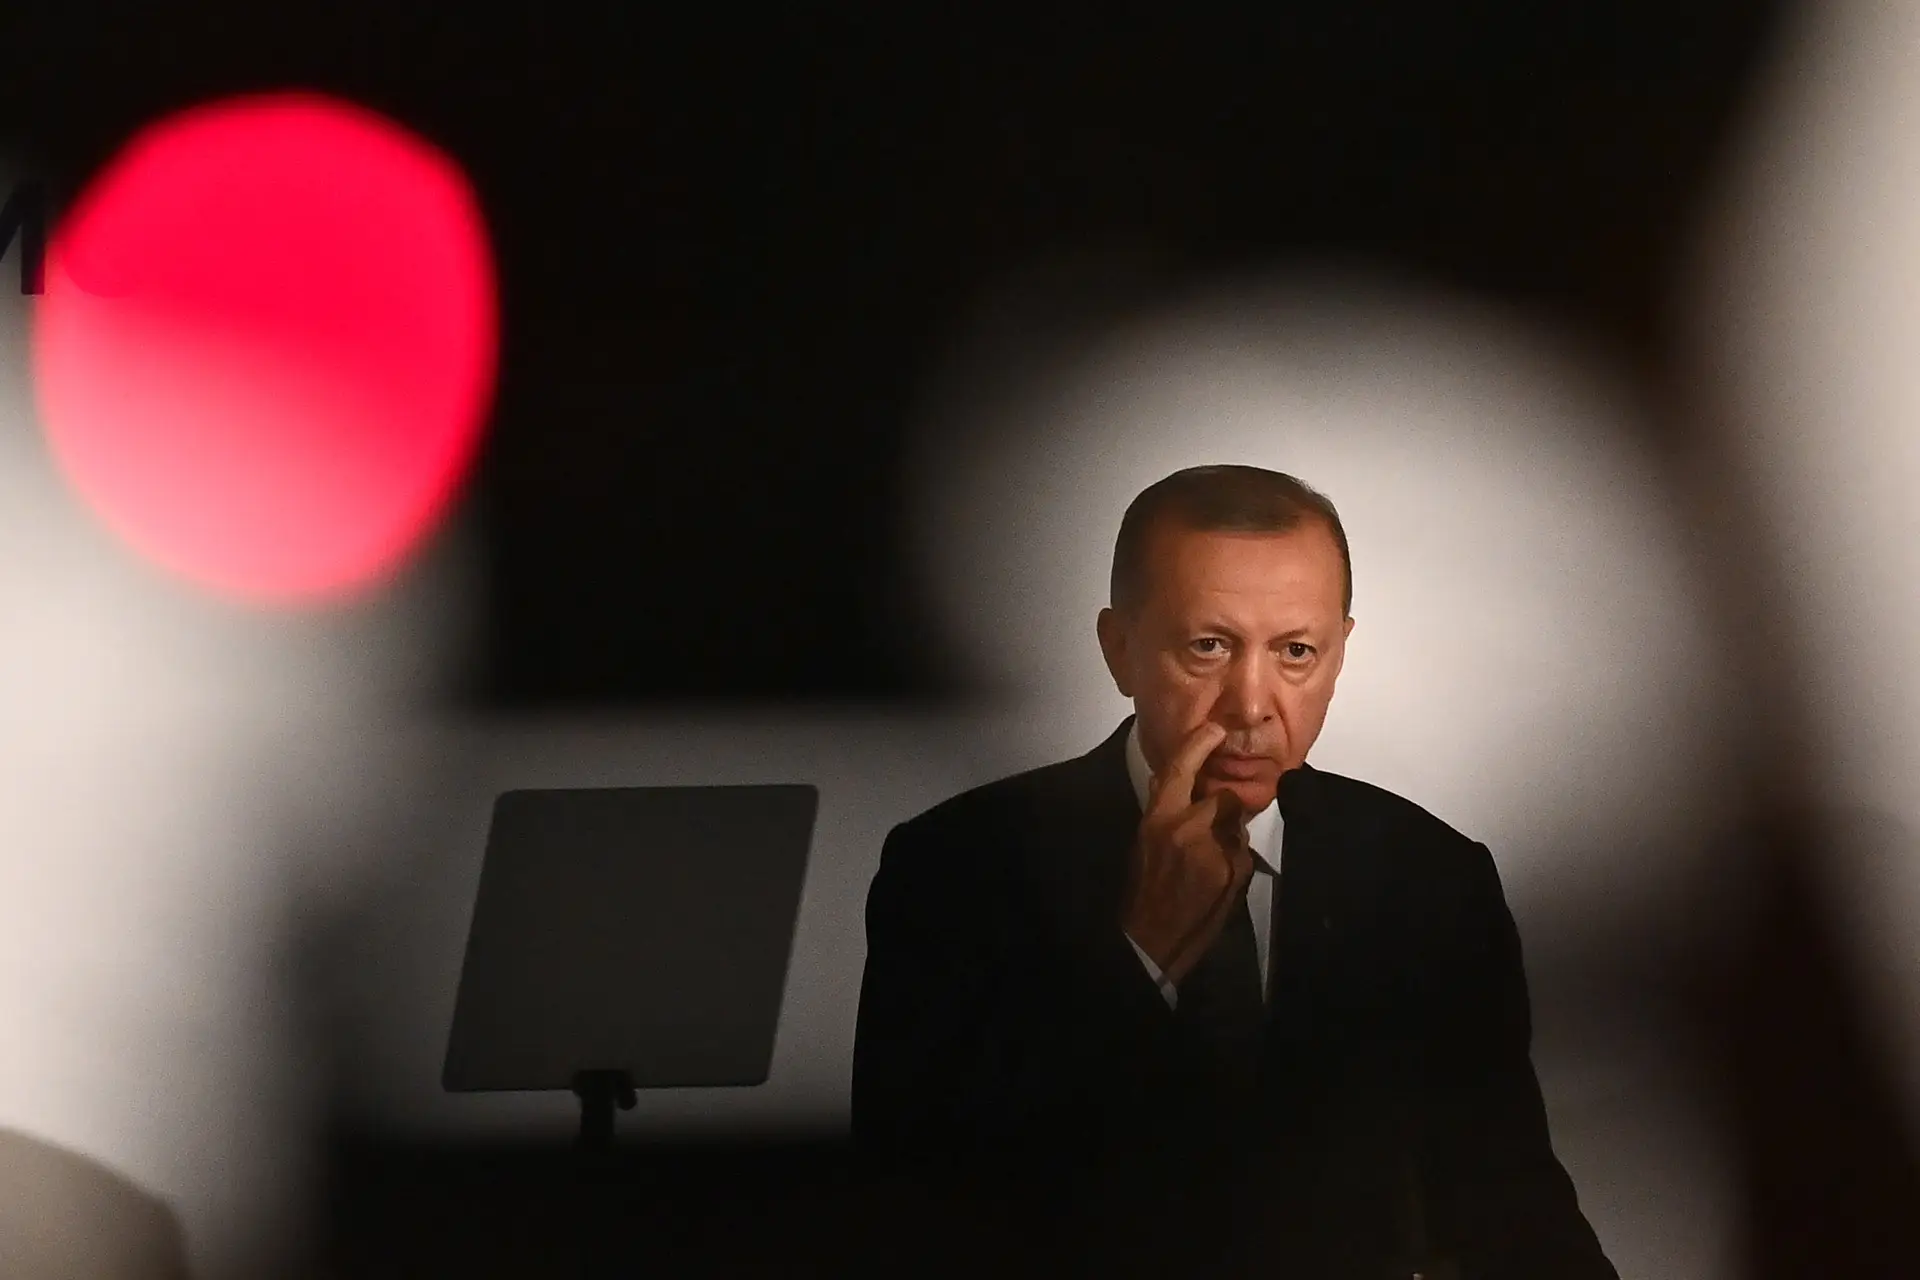 Oposição turca espera retirar Erdogan do poder com ajuda de sociólogo e economista